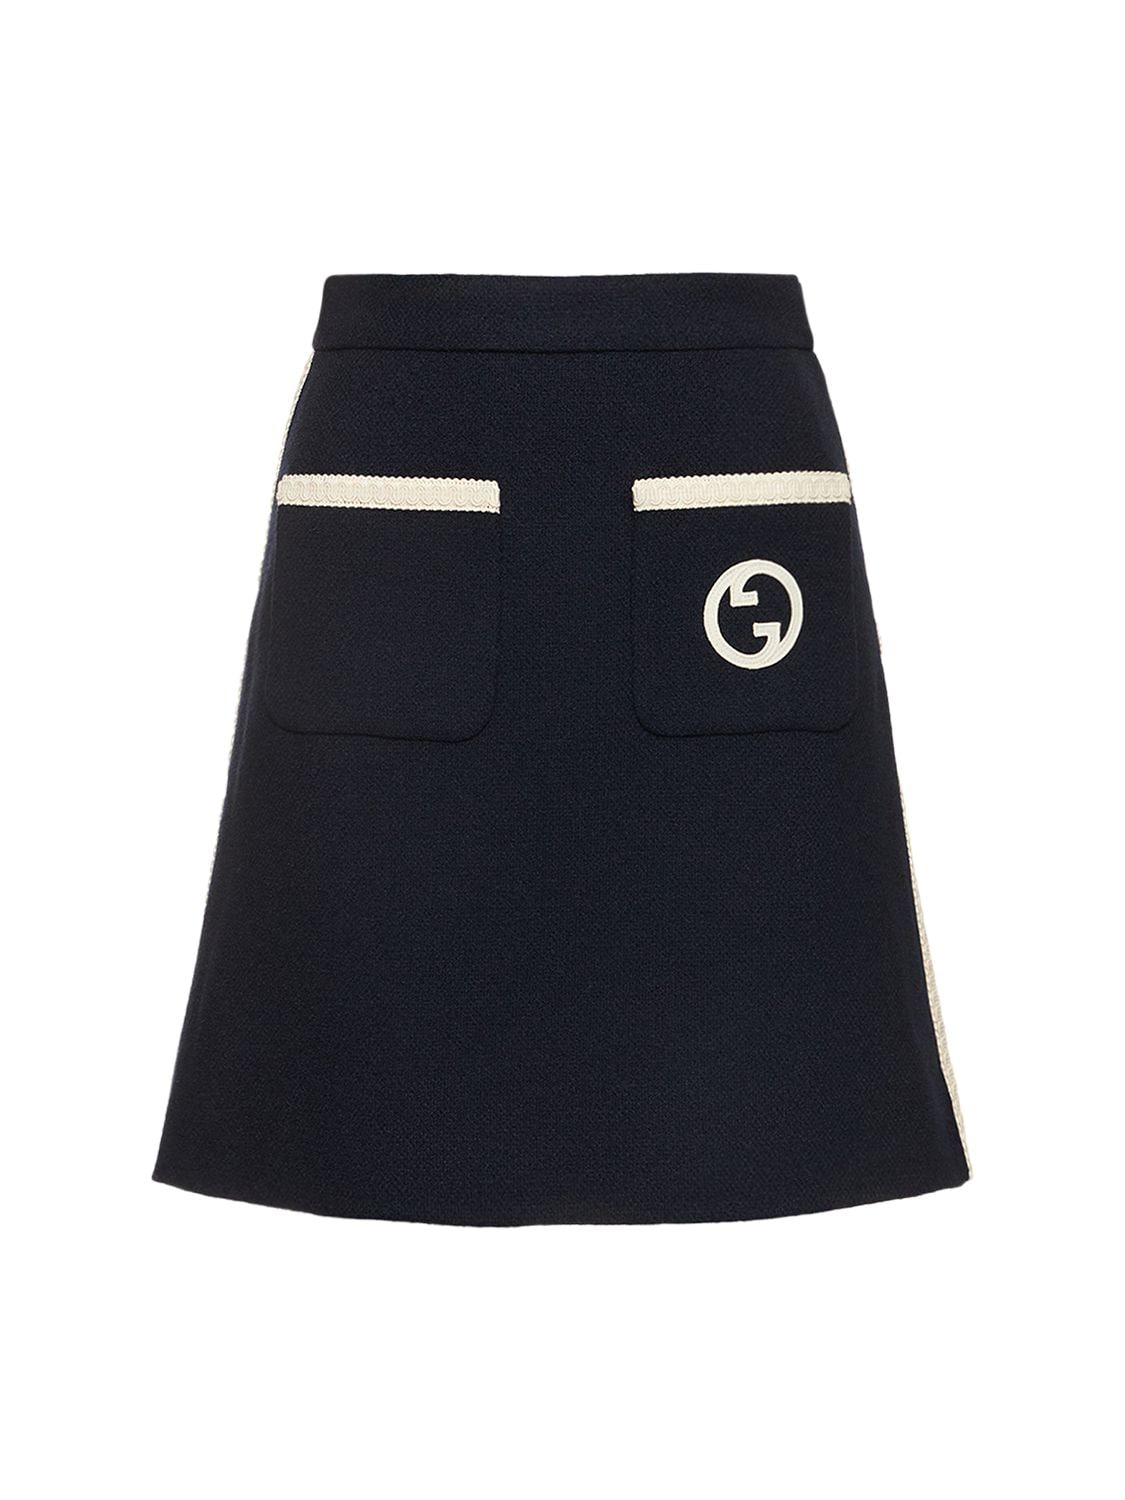 Image of Wool Blend Retro Tweed Skirt